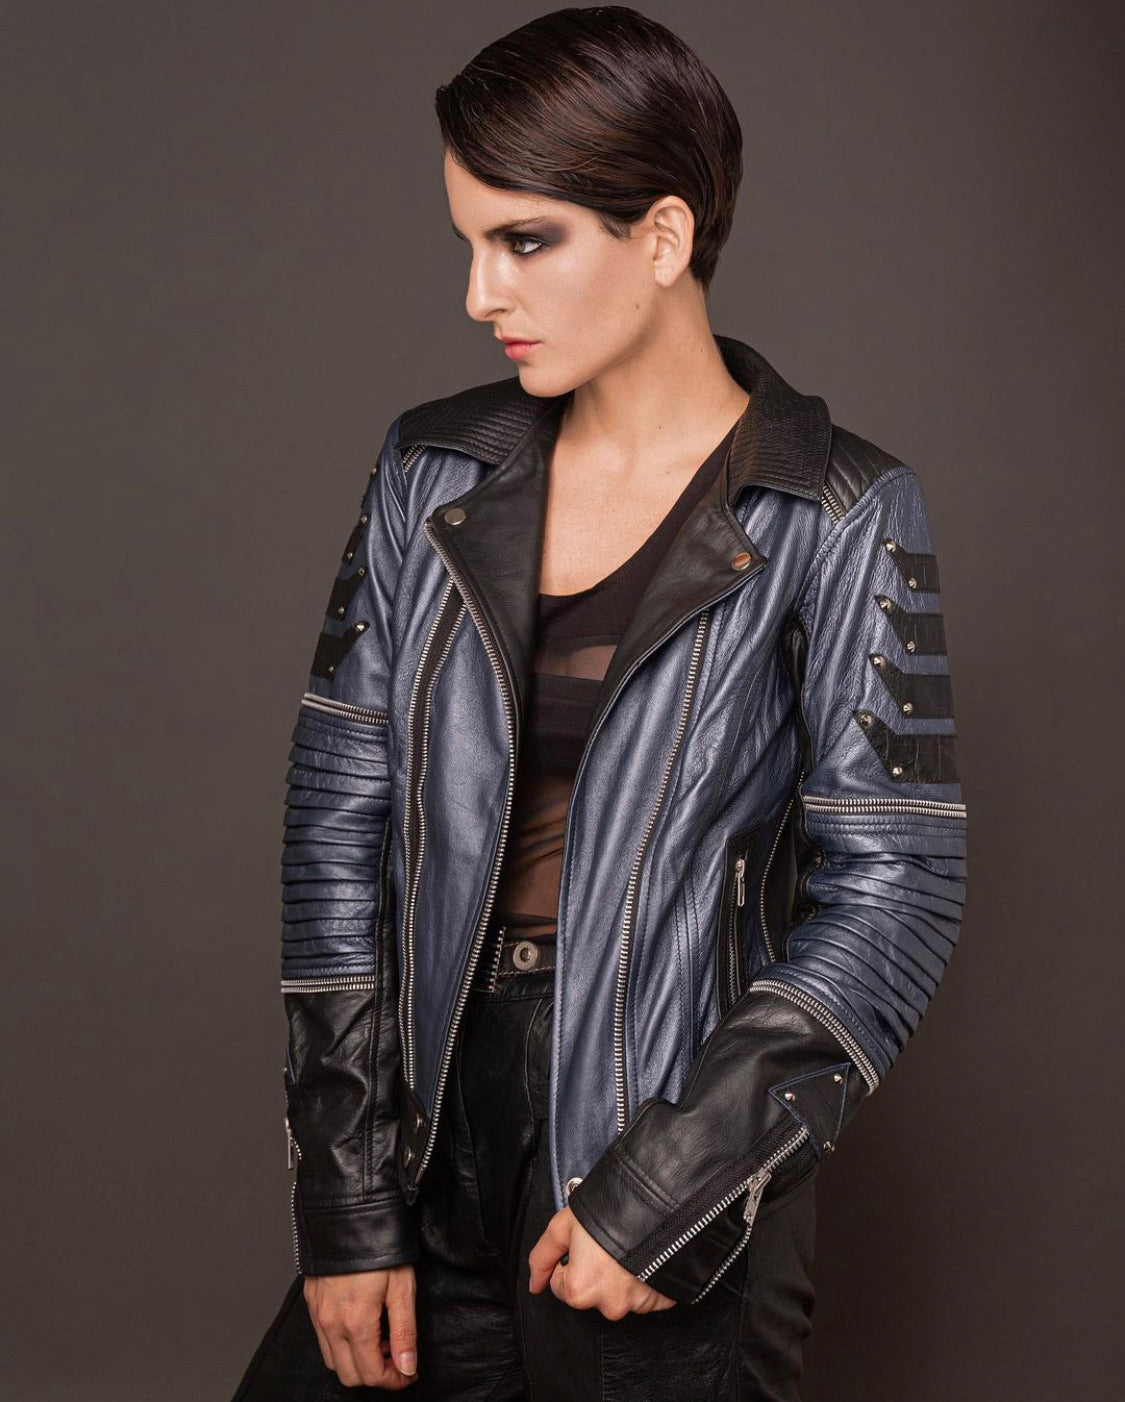 Exxo Leather jacket by Nikinga